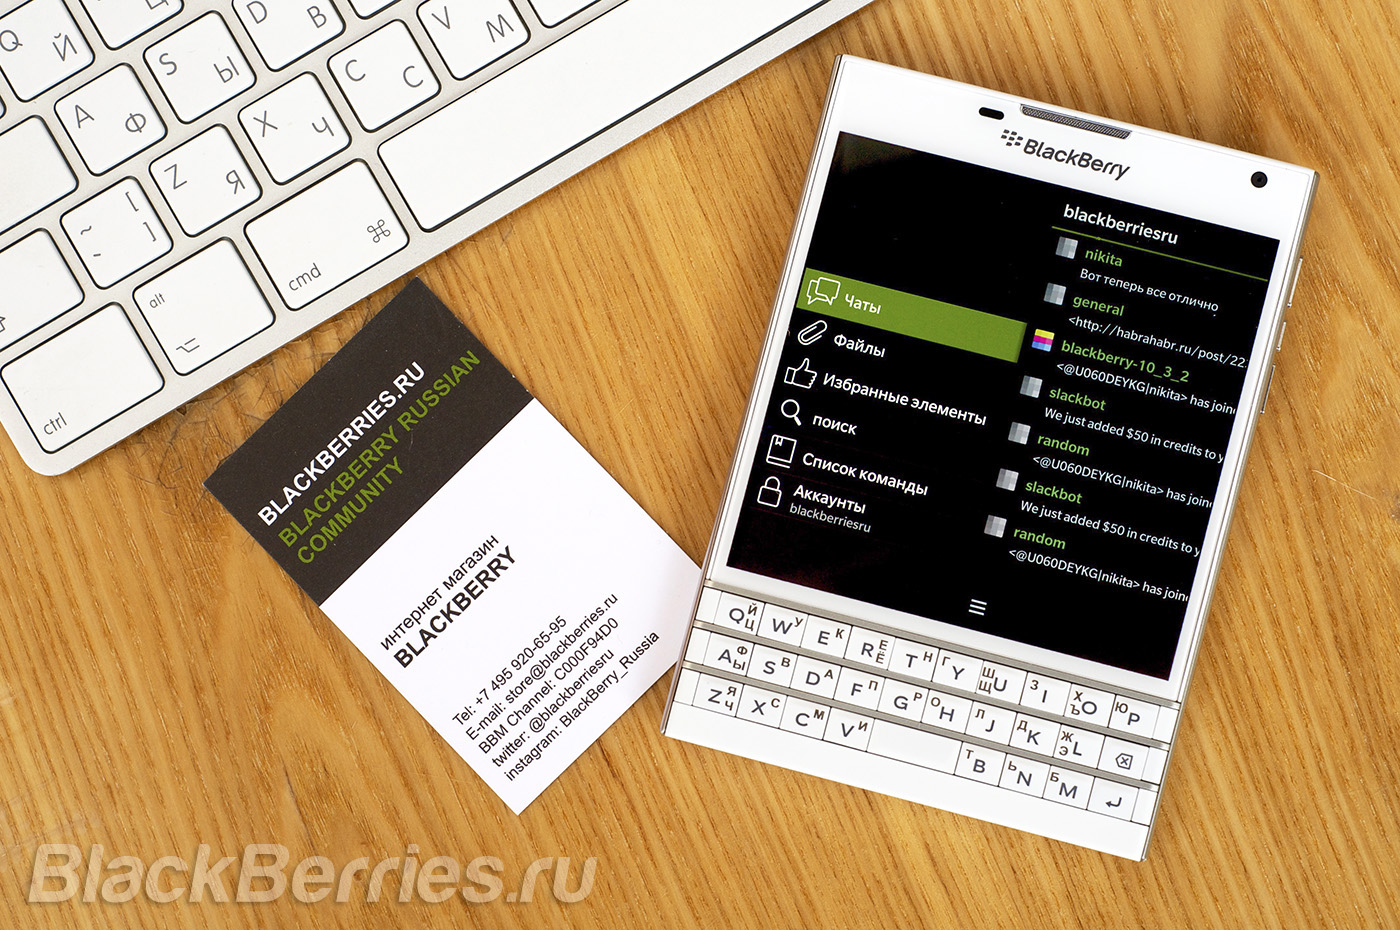 BlackBerry-Passport-Apps-18-07-14